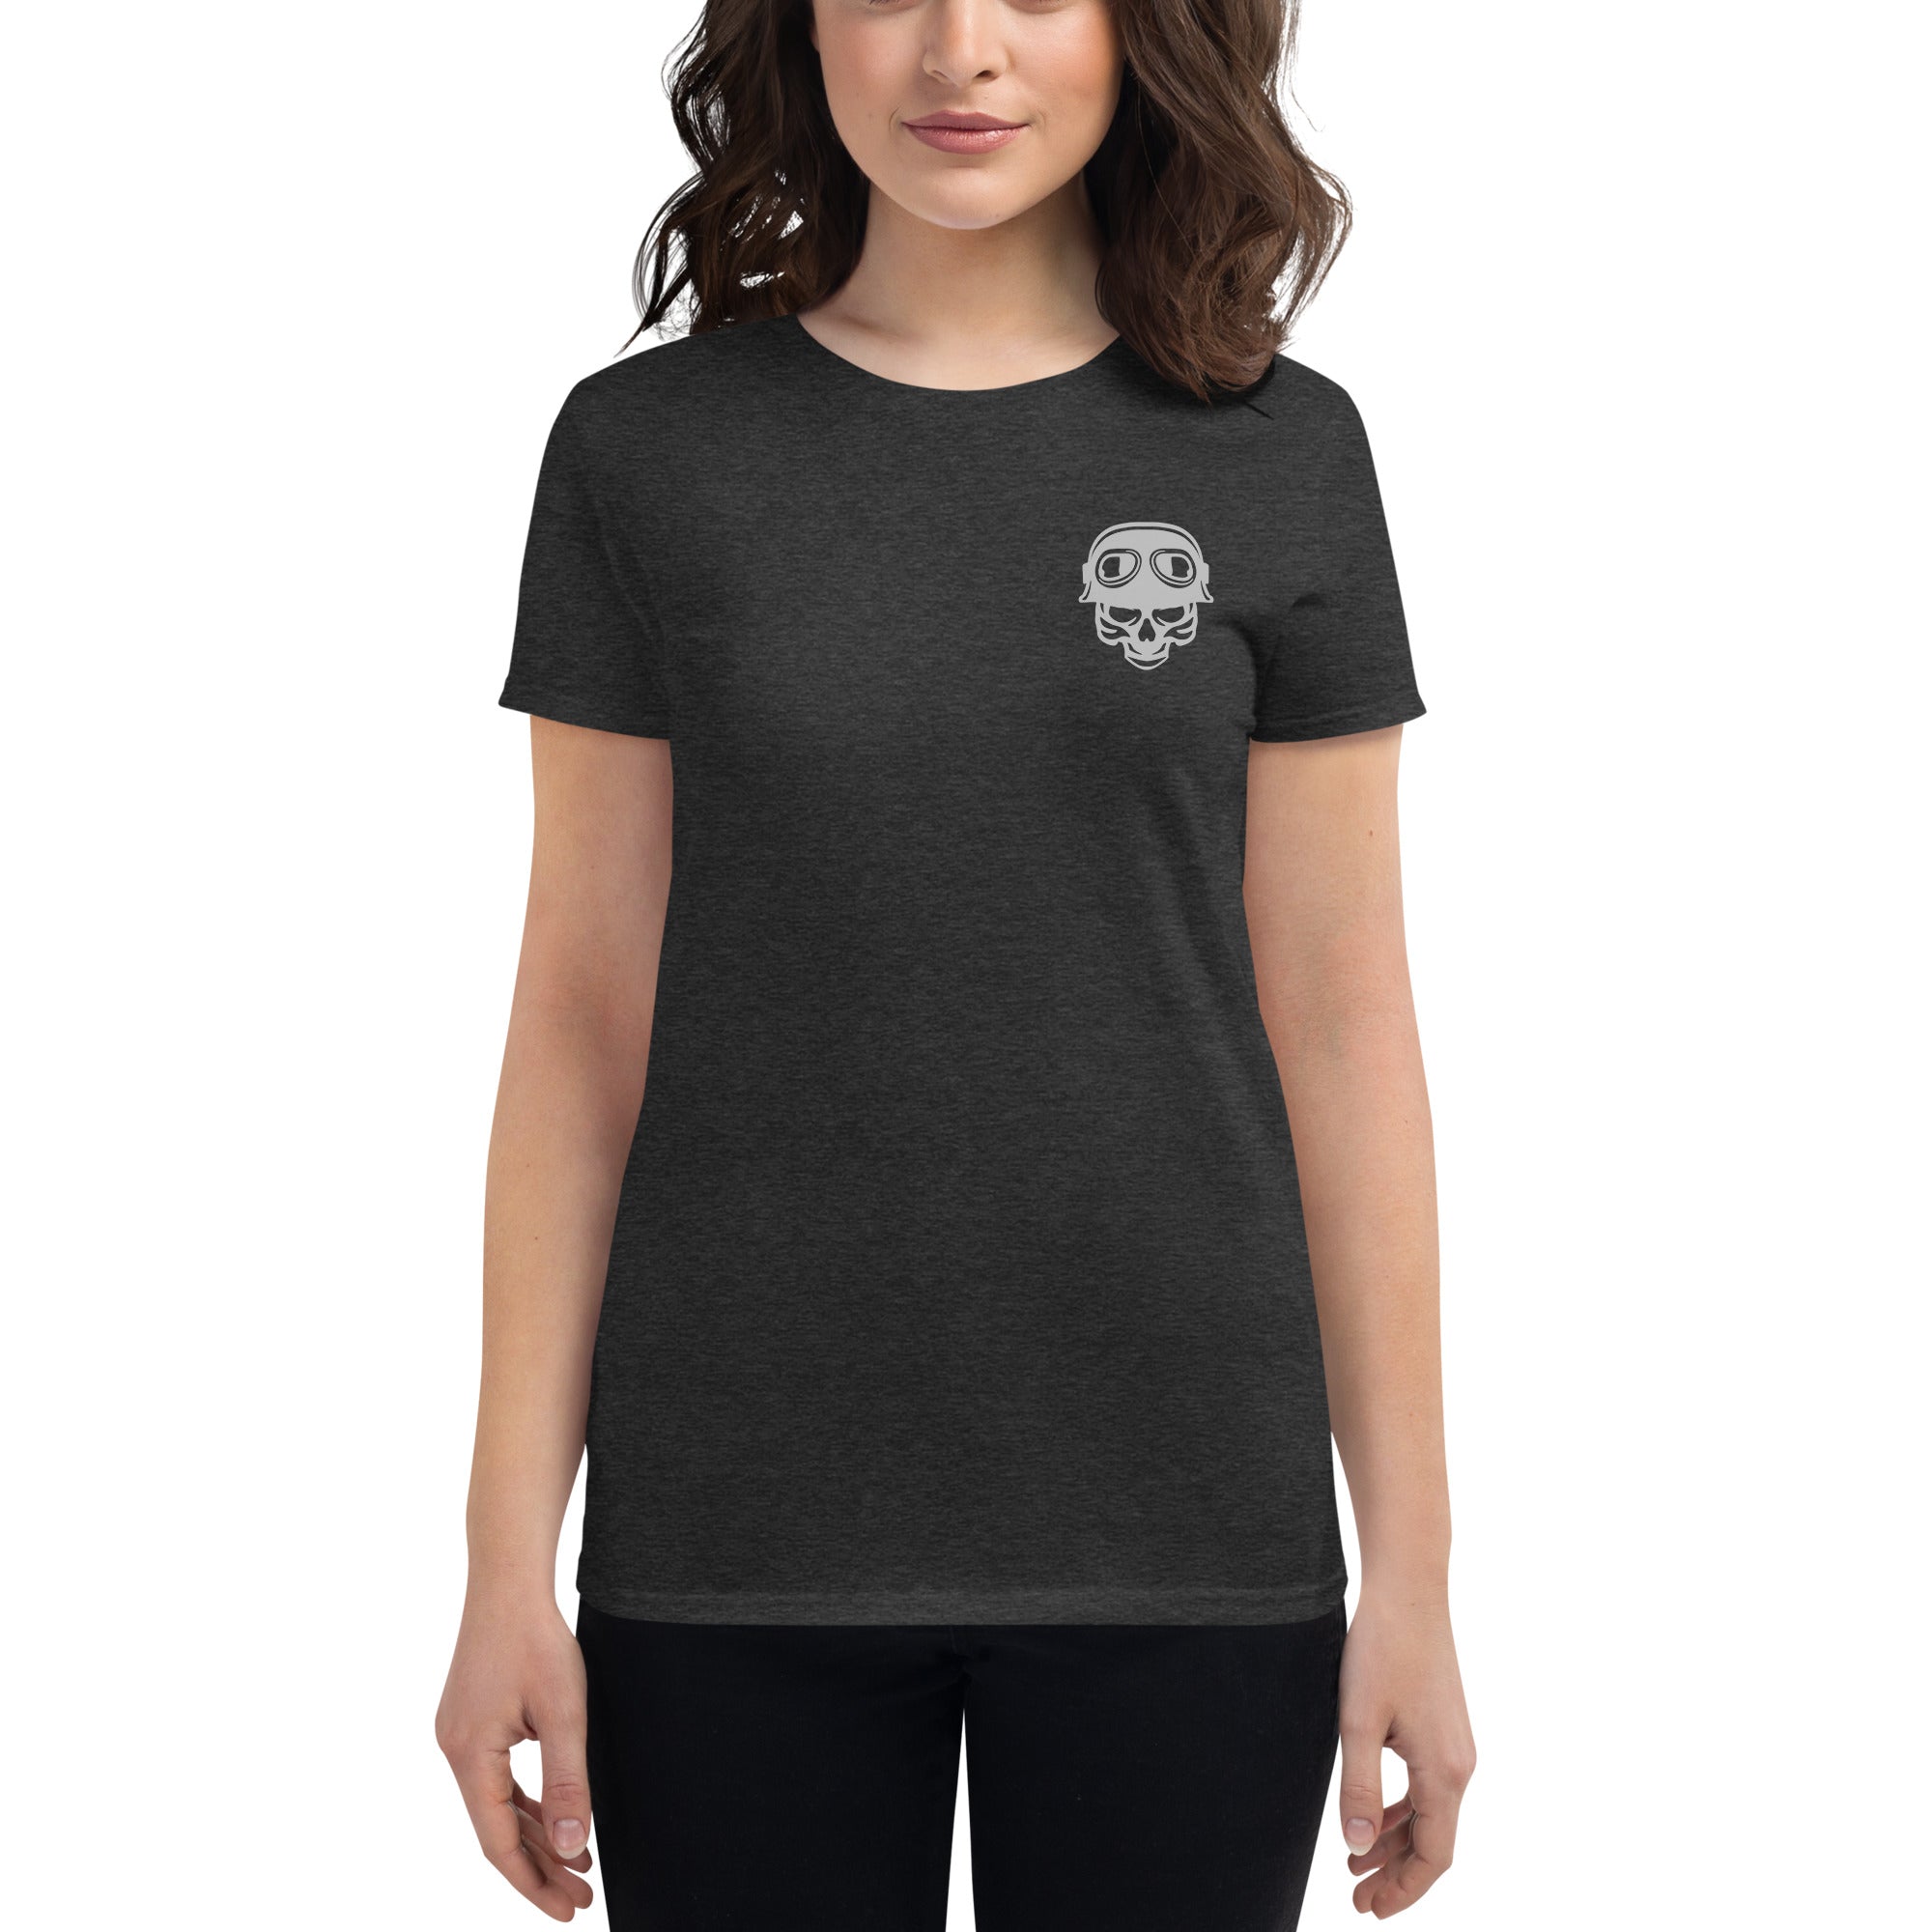 Snakes & Skulls-Women's short sleeve t-shirt